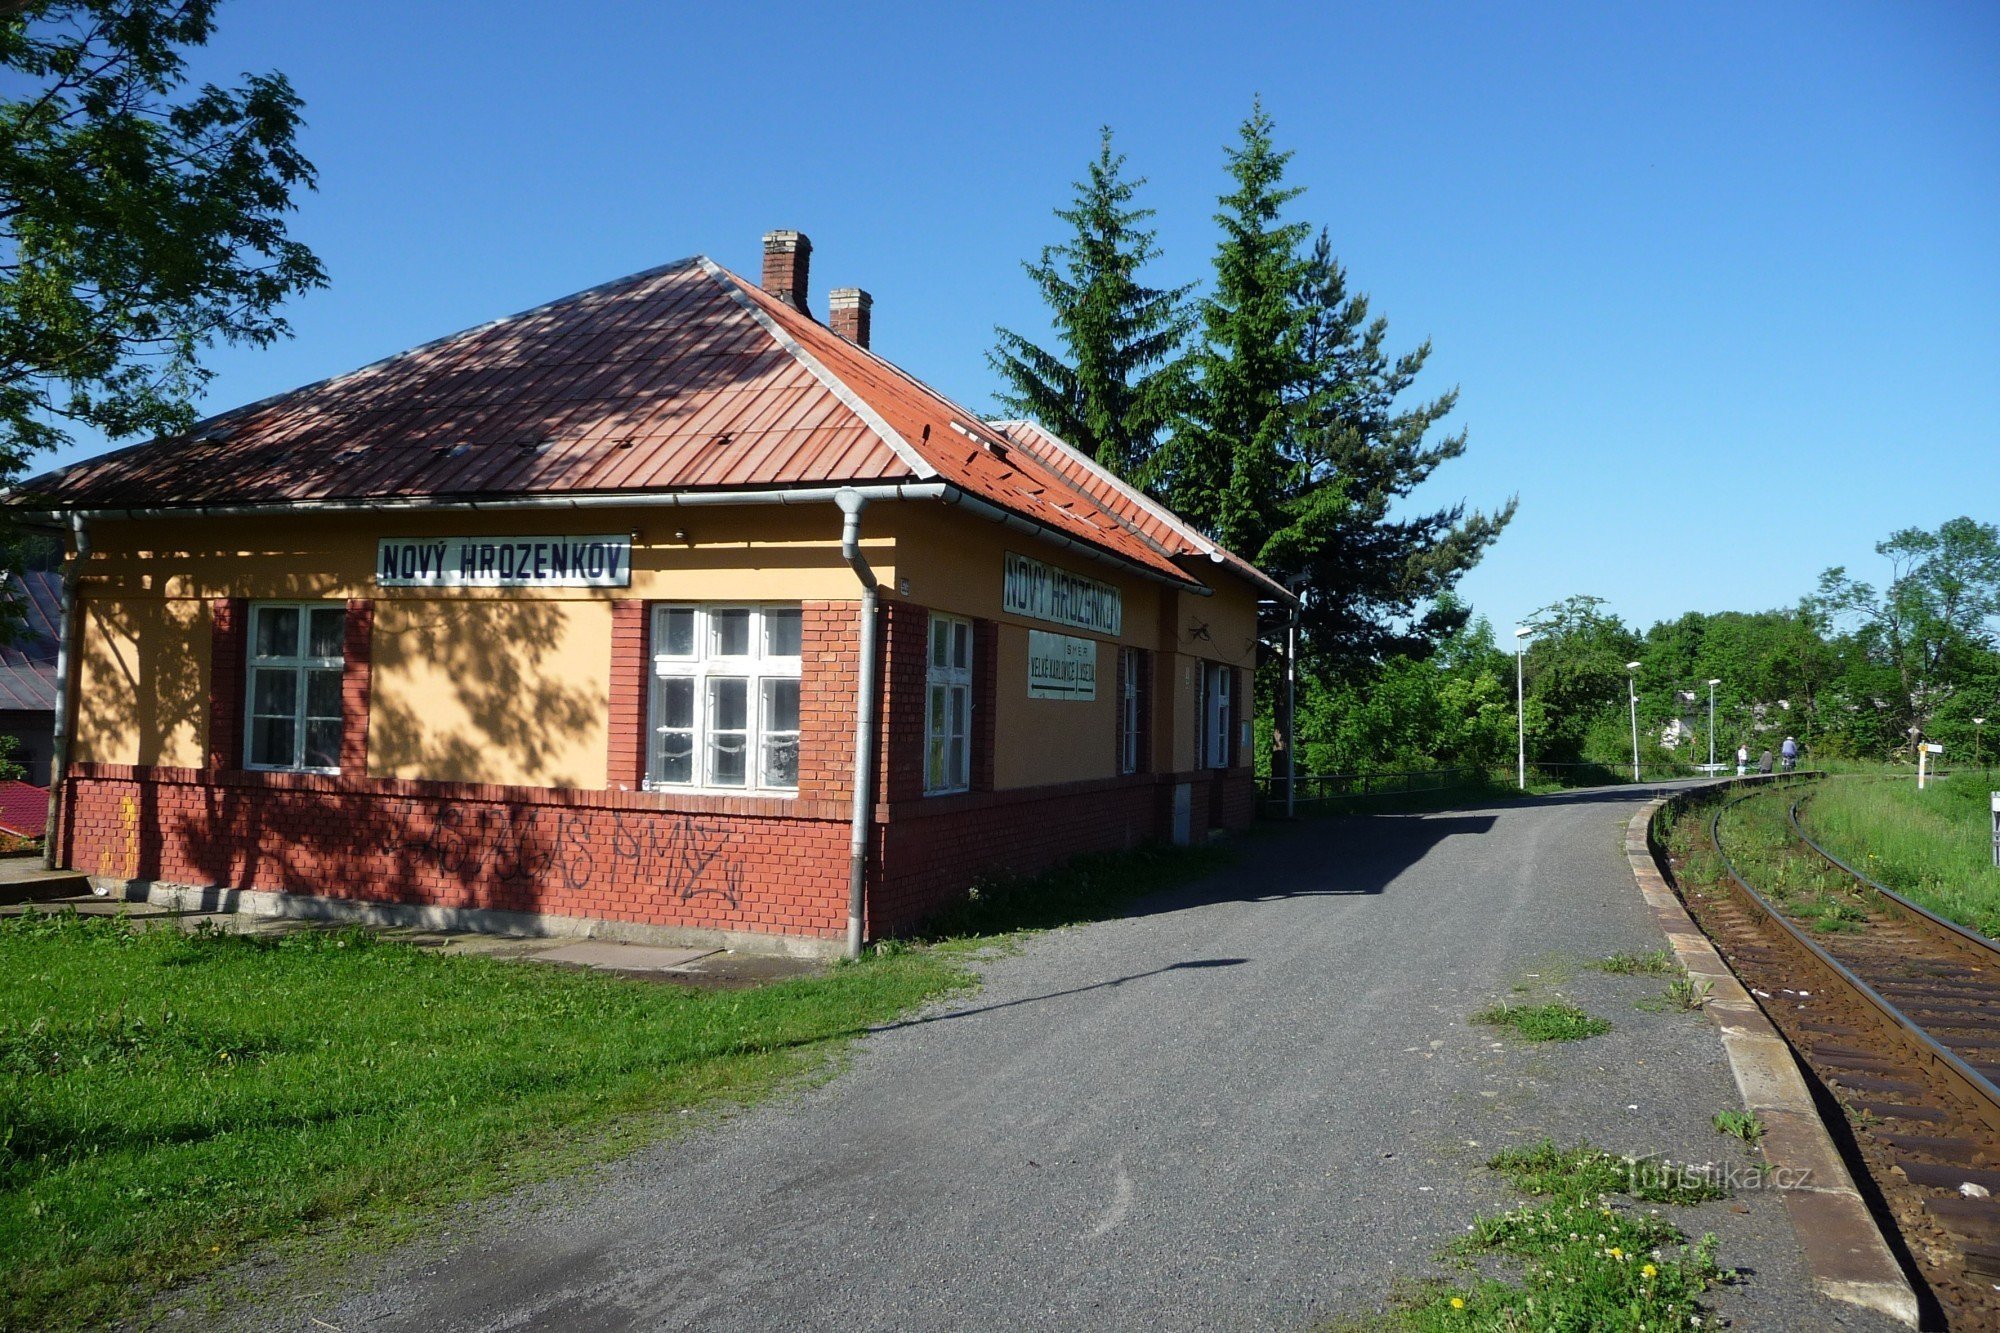 Avtobusno postajališče ČSD - Nový Hrozenkov